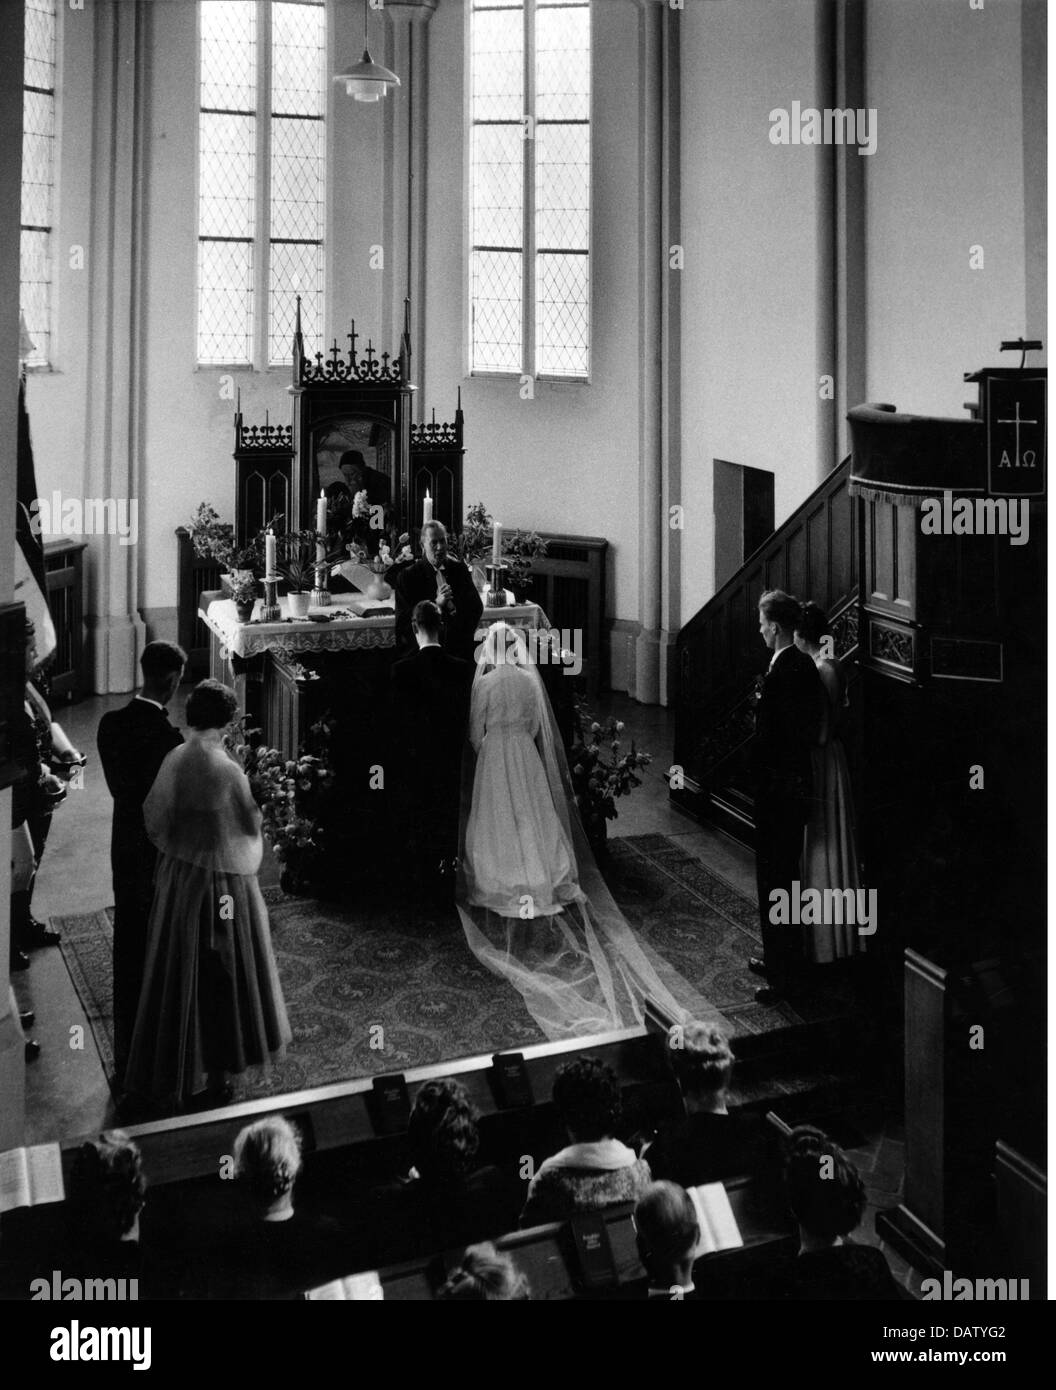 Persone, matrimoni, cerimonie, coppie nuziali durante la cerimonia nuziale nella chiesa, anni 50, diritti aggiuntivi-clearences-non disponibile Foto Stock